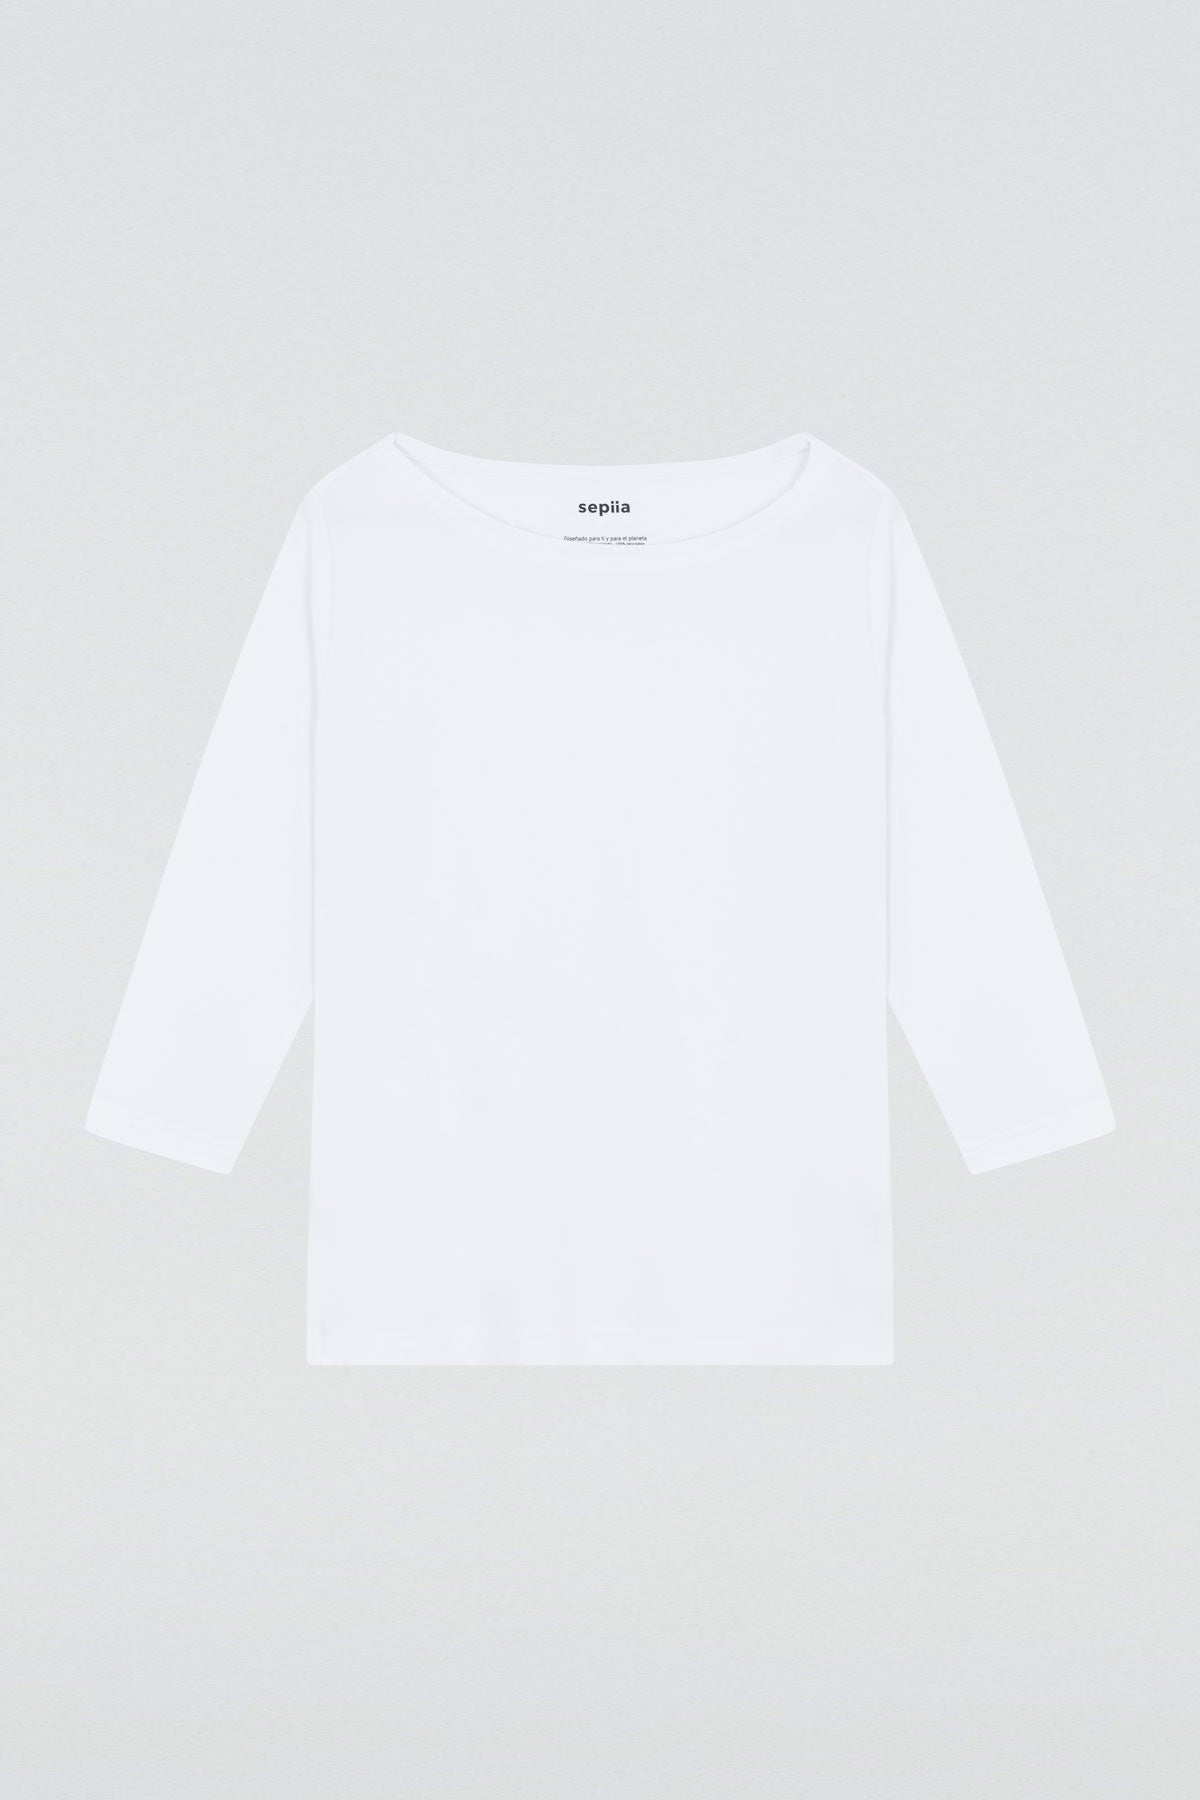 Camiseta para mujer con manga 3/4 y escote barco en color blanco. Prenda básica perfecta para cualquier ocasión. Foto plano